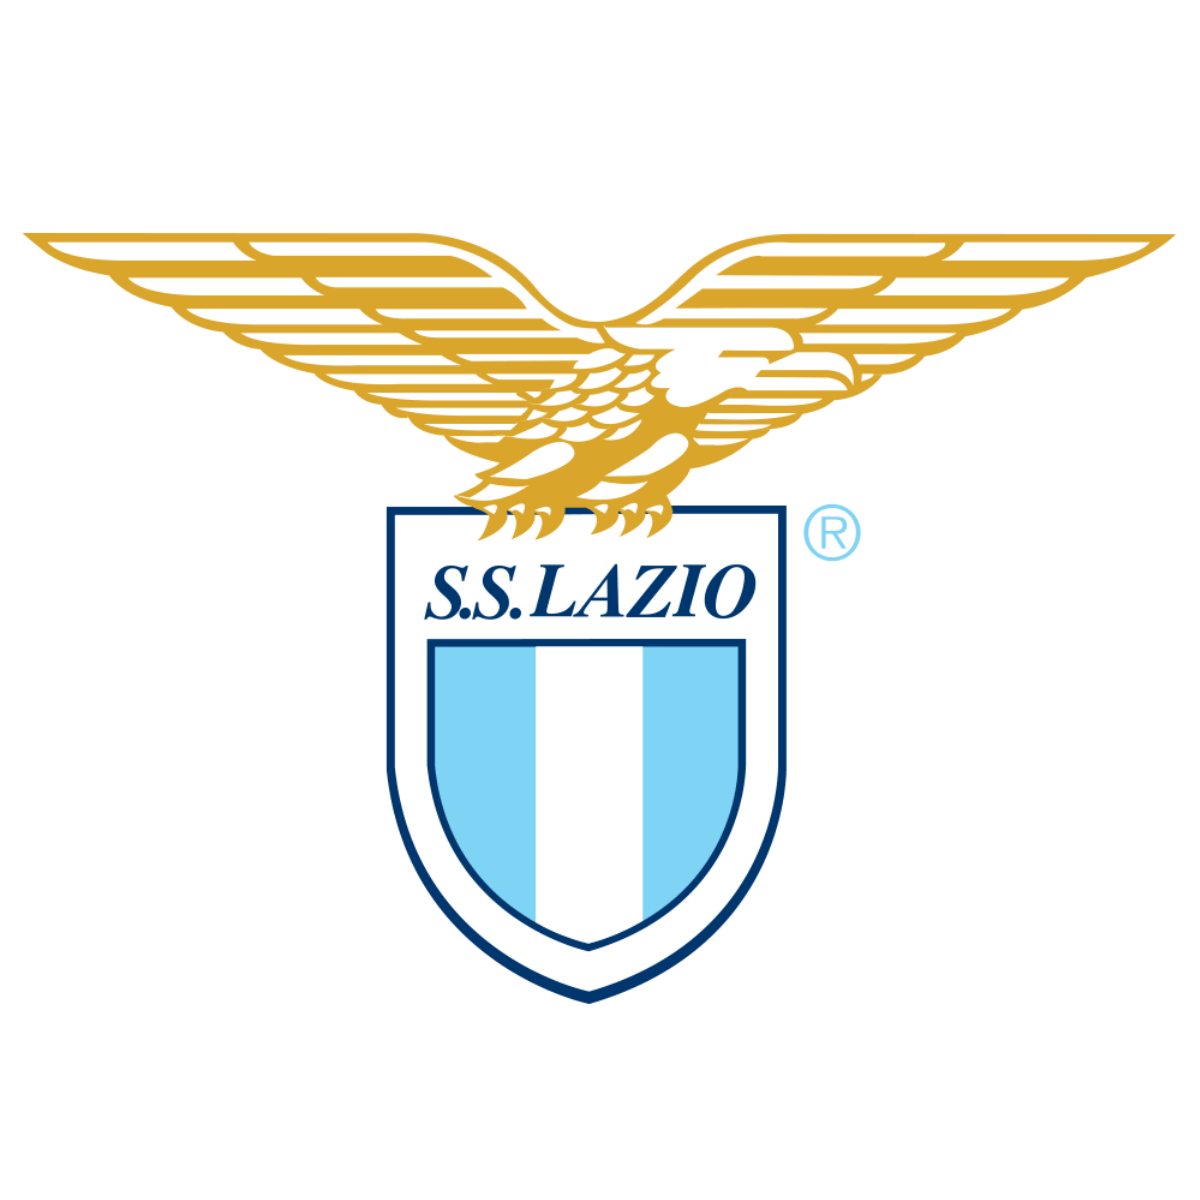 Lazio Logo - S.S. Lazio